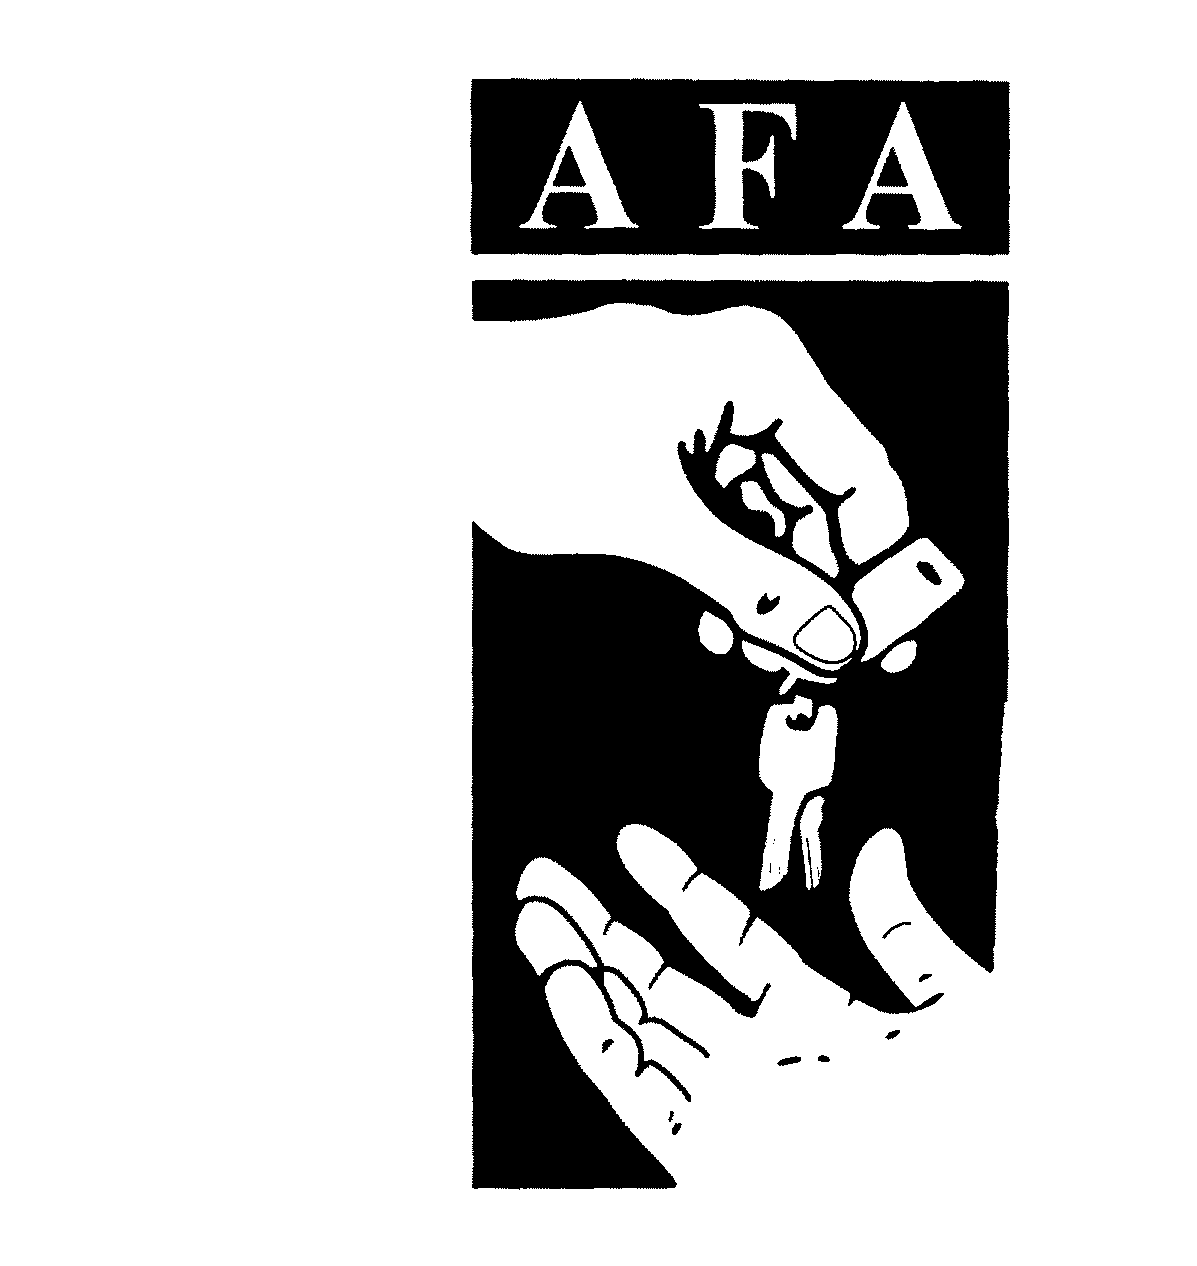 Trademark Logo AFA